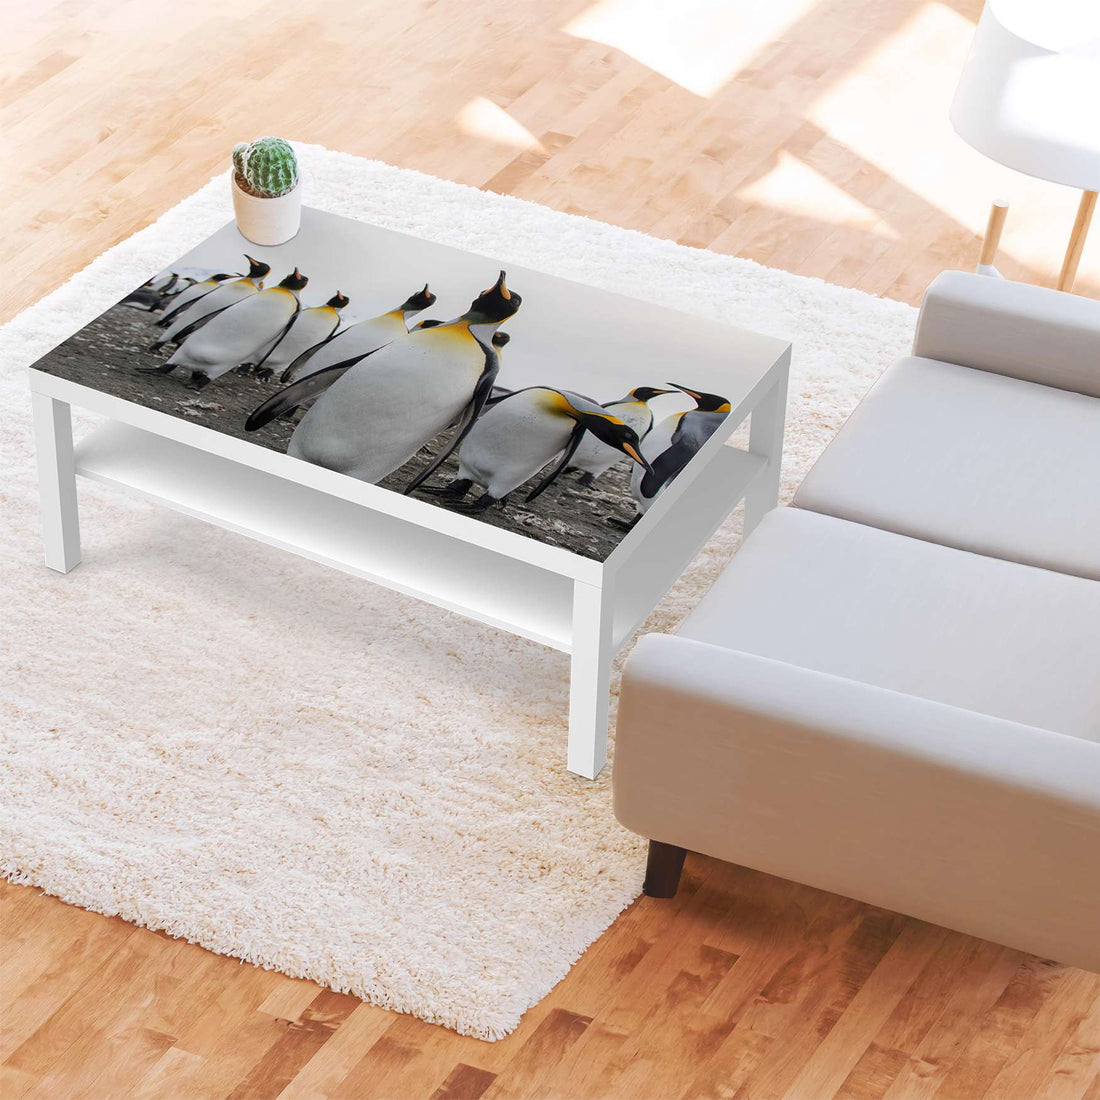 Klebefolie Penguin Family - IKEA Lack Tisch 118x78 cm - Wohnzimmer